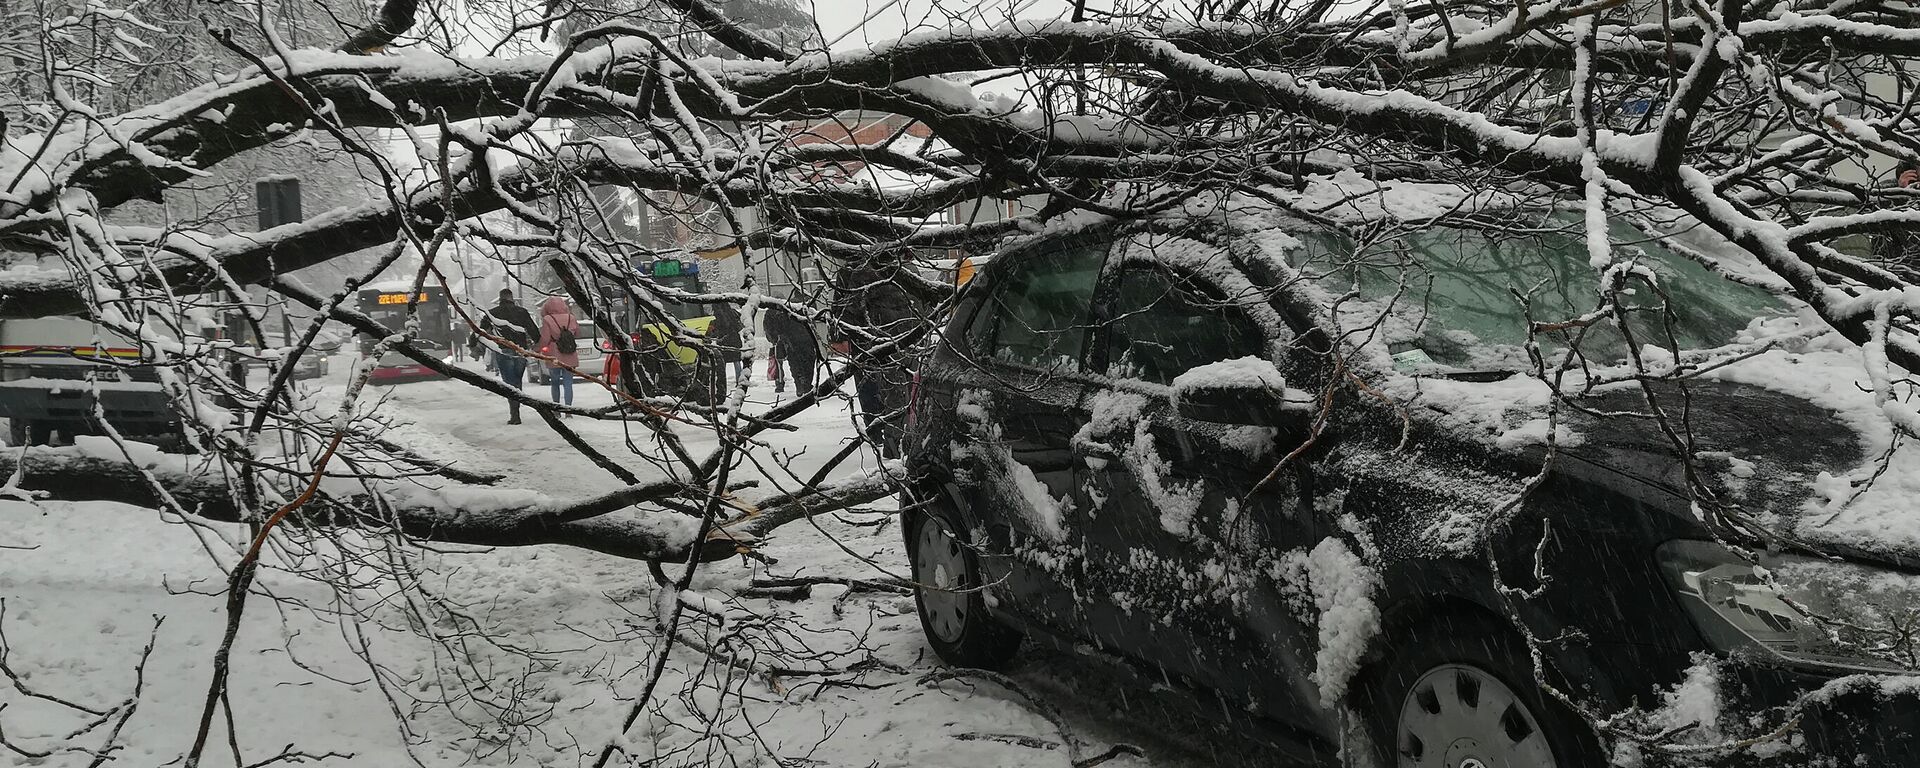 Дрво у Београду пало под тежином снега - Sputnik Србија, 1920, 13.12.2021